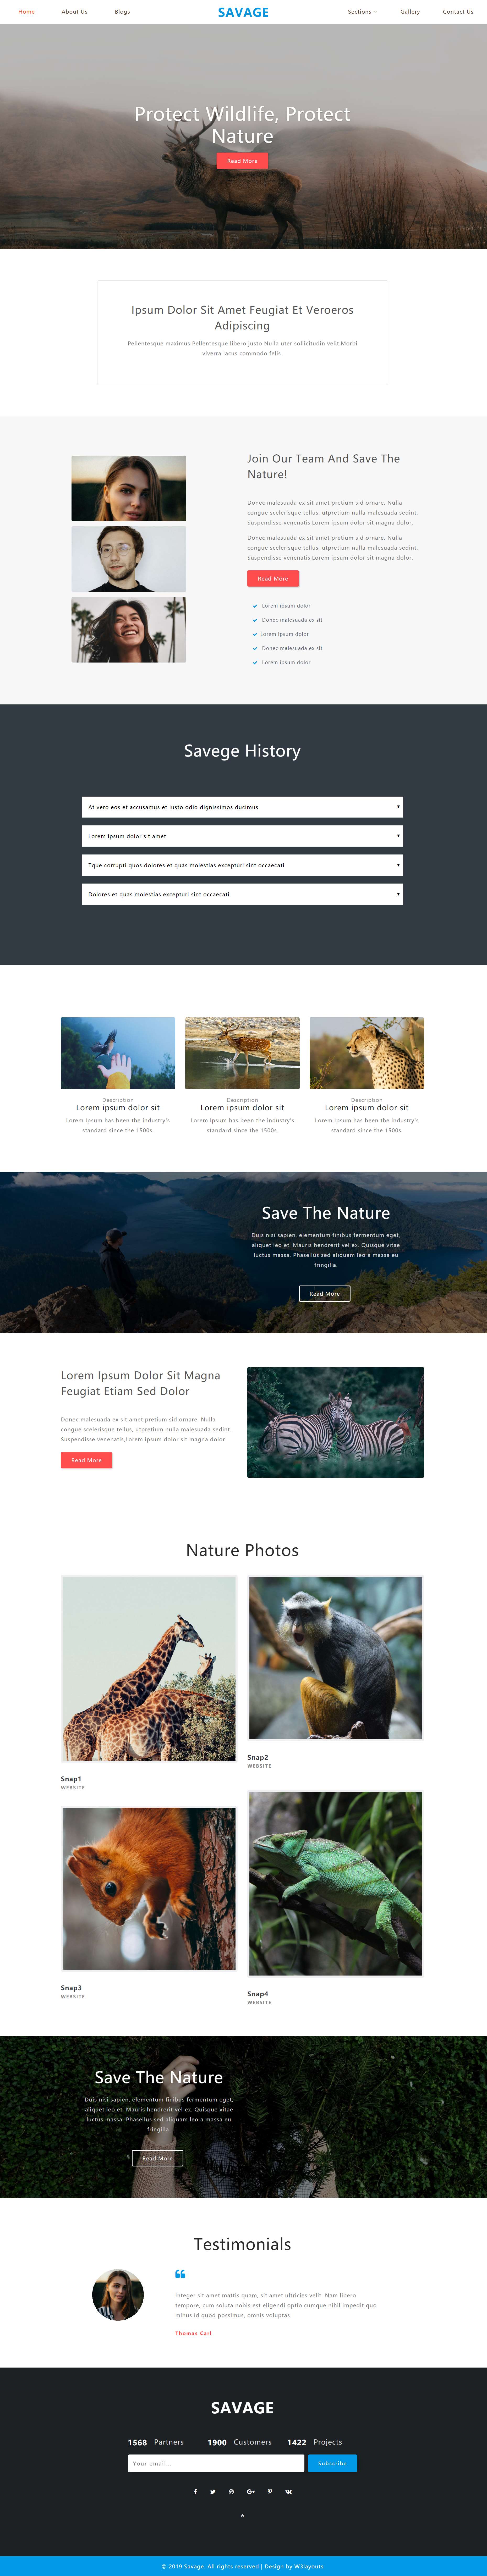 HTML红色欧美形式野生动物保护网页模板代码